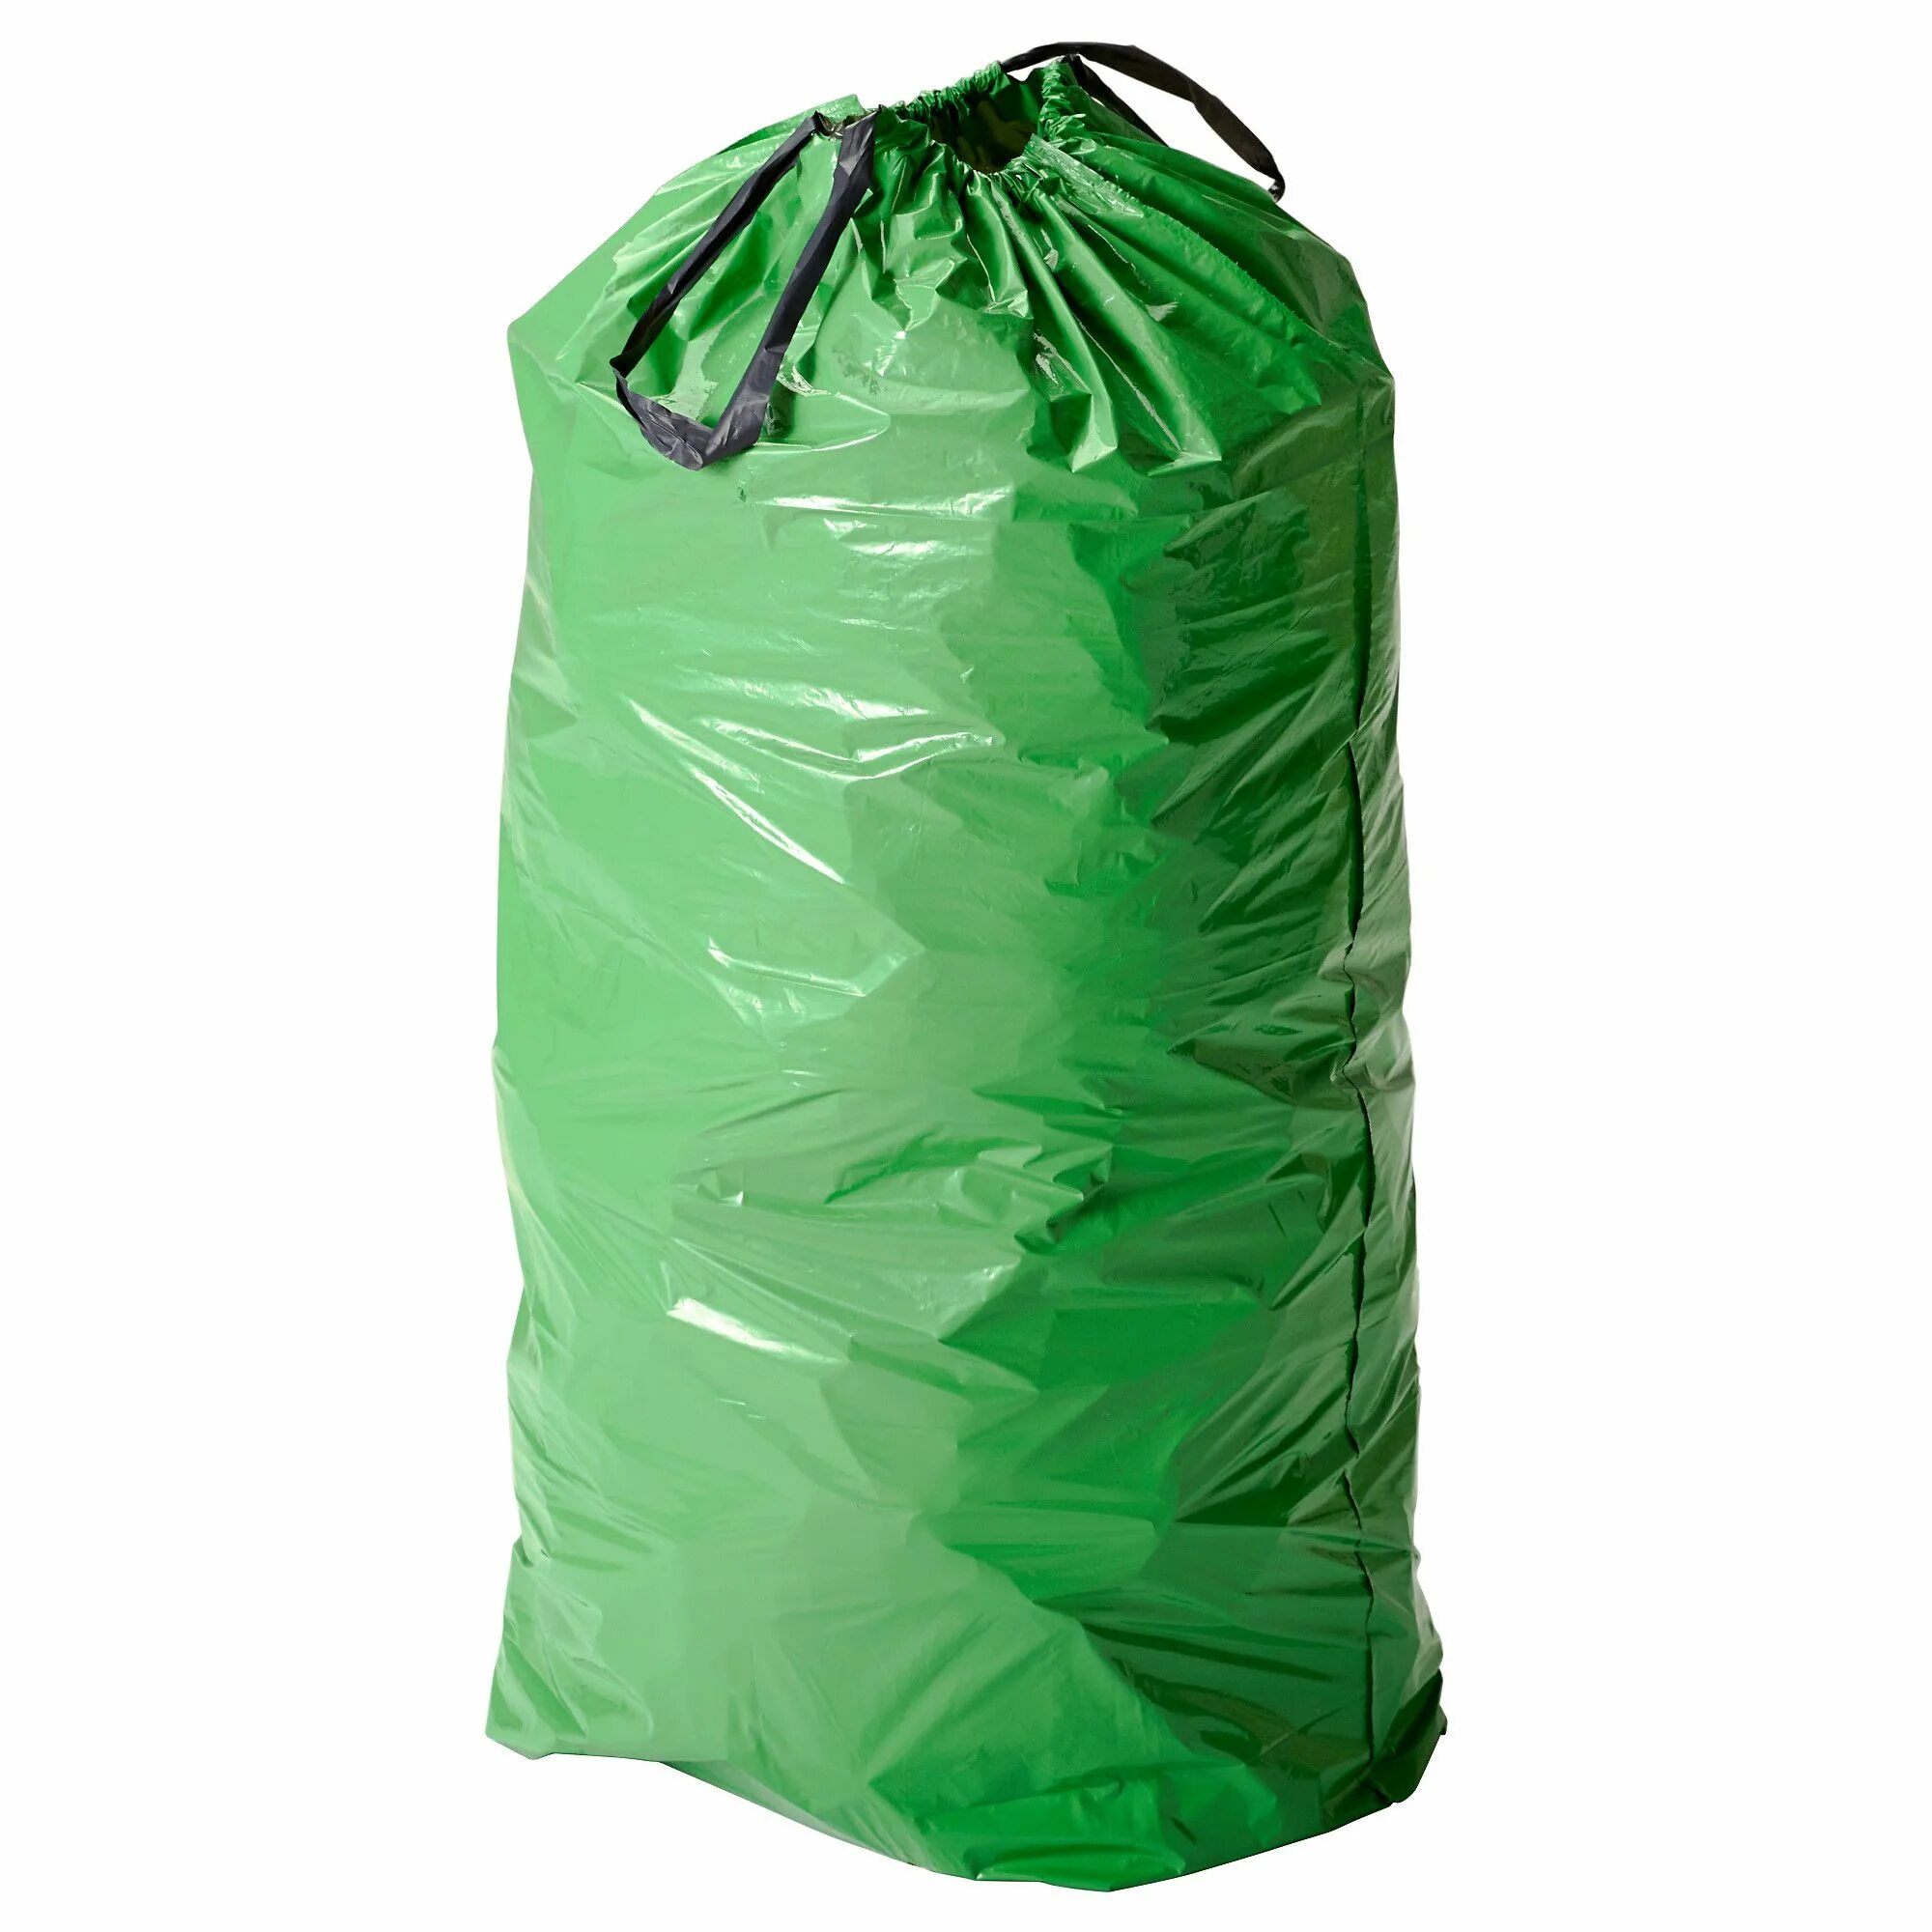 Куплю мешки зеленые. Мешки для мусора. Полиэтиленовые мешки для мусора. Клеенчатый мешок. Полиэтилен мешок.